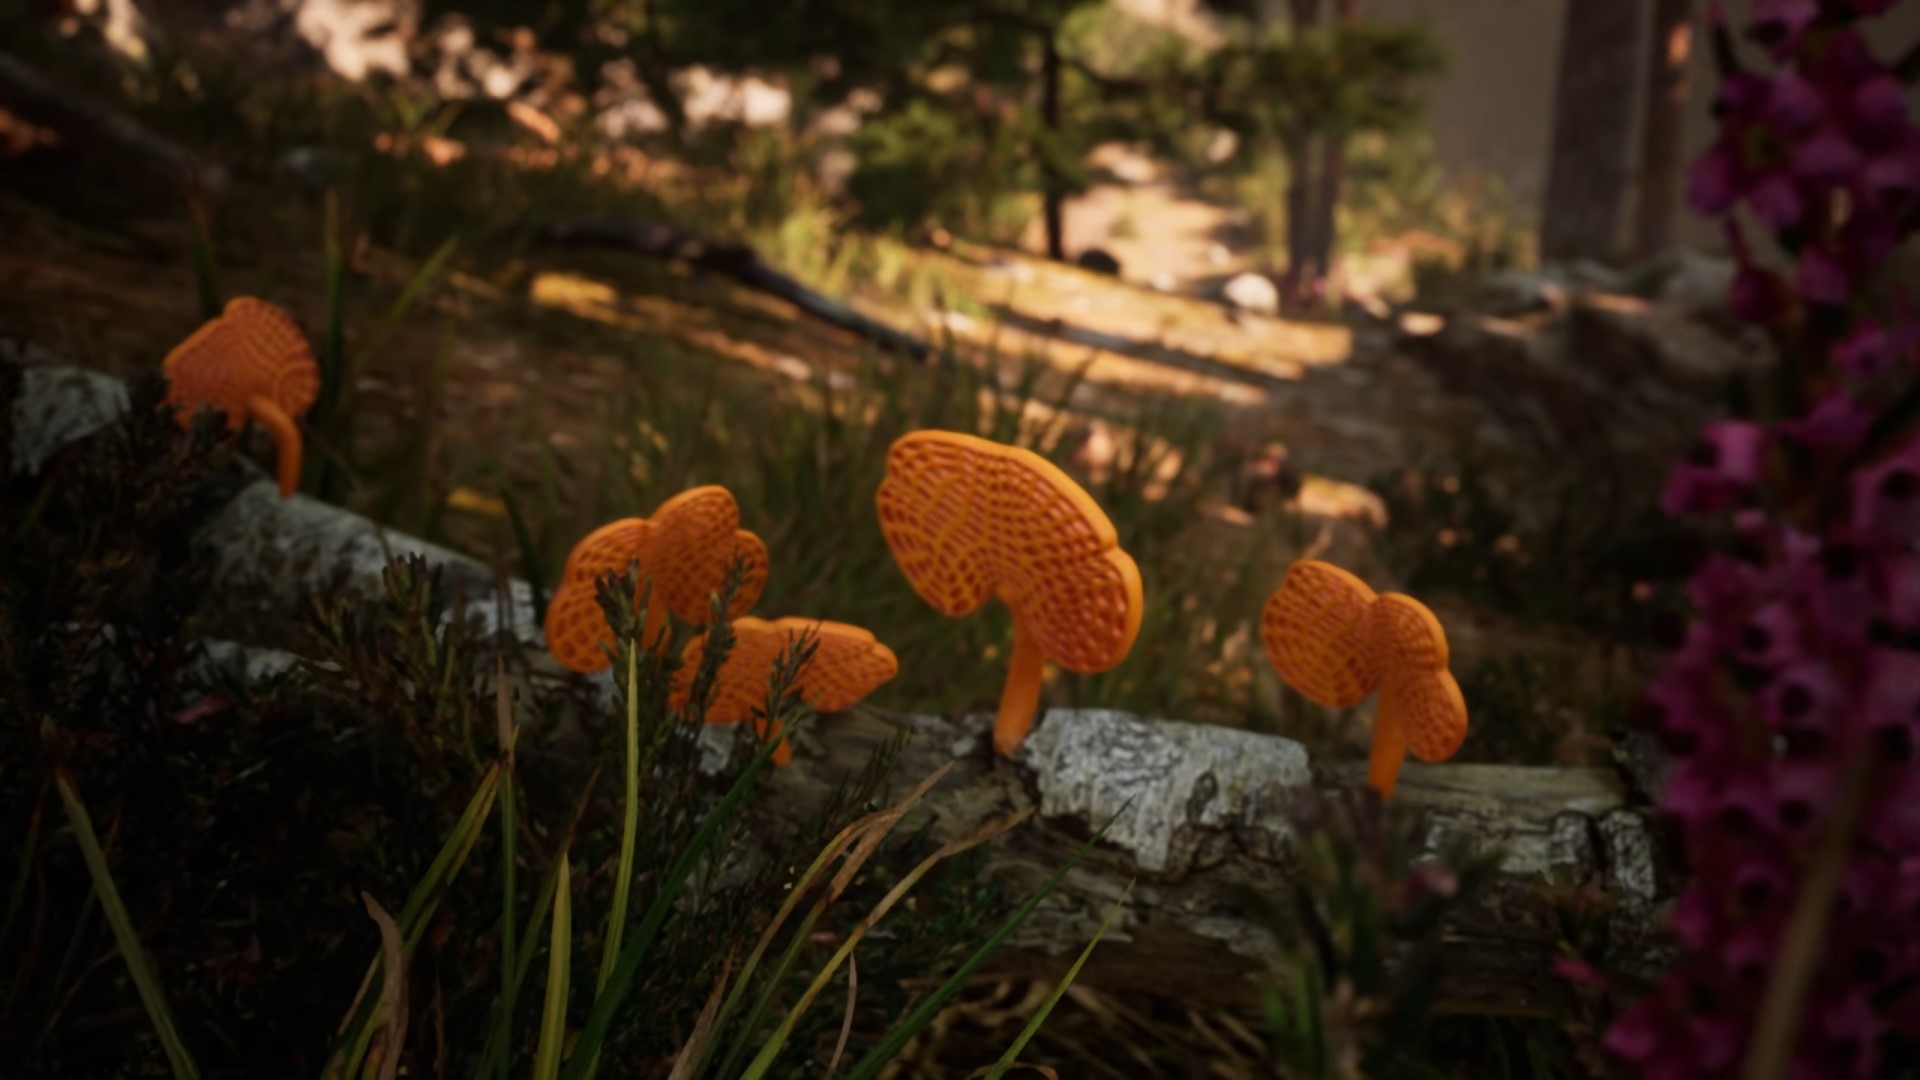 Zoek naar paddenstoelen en maak foto's van dieren in het wild in deze nieuwe simulatie